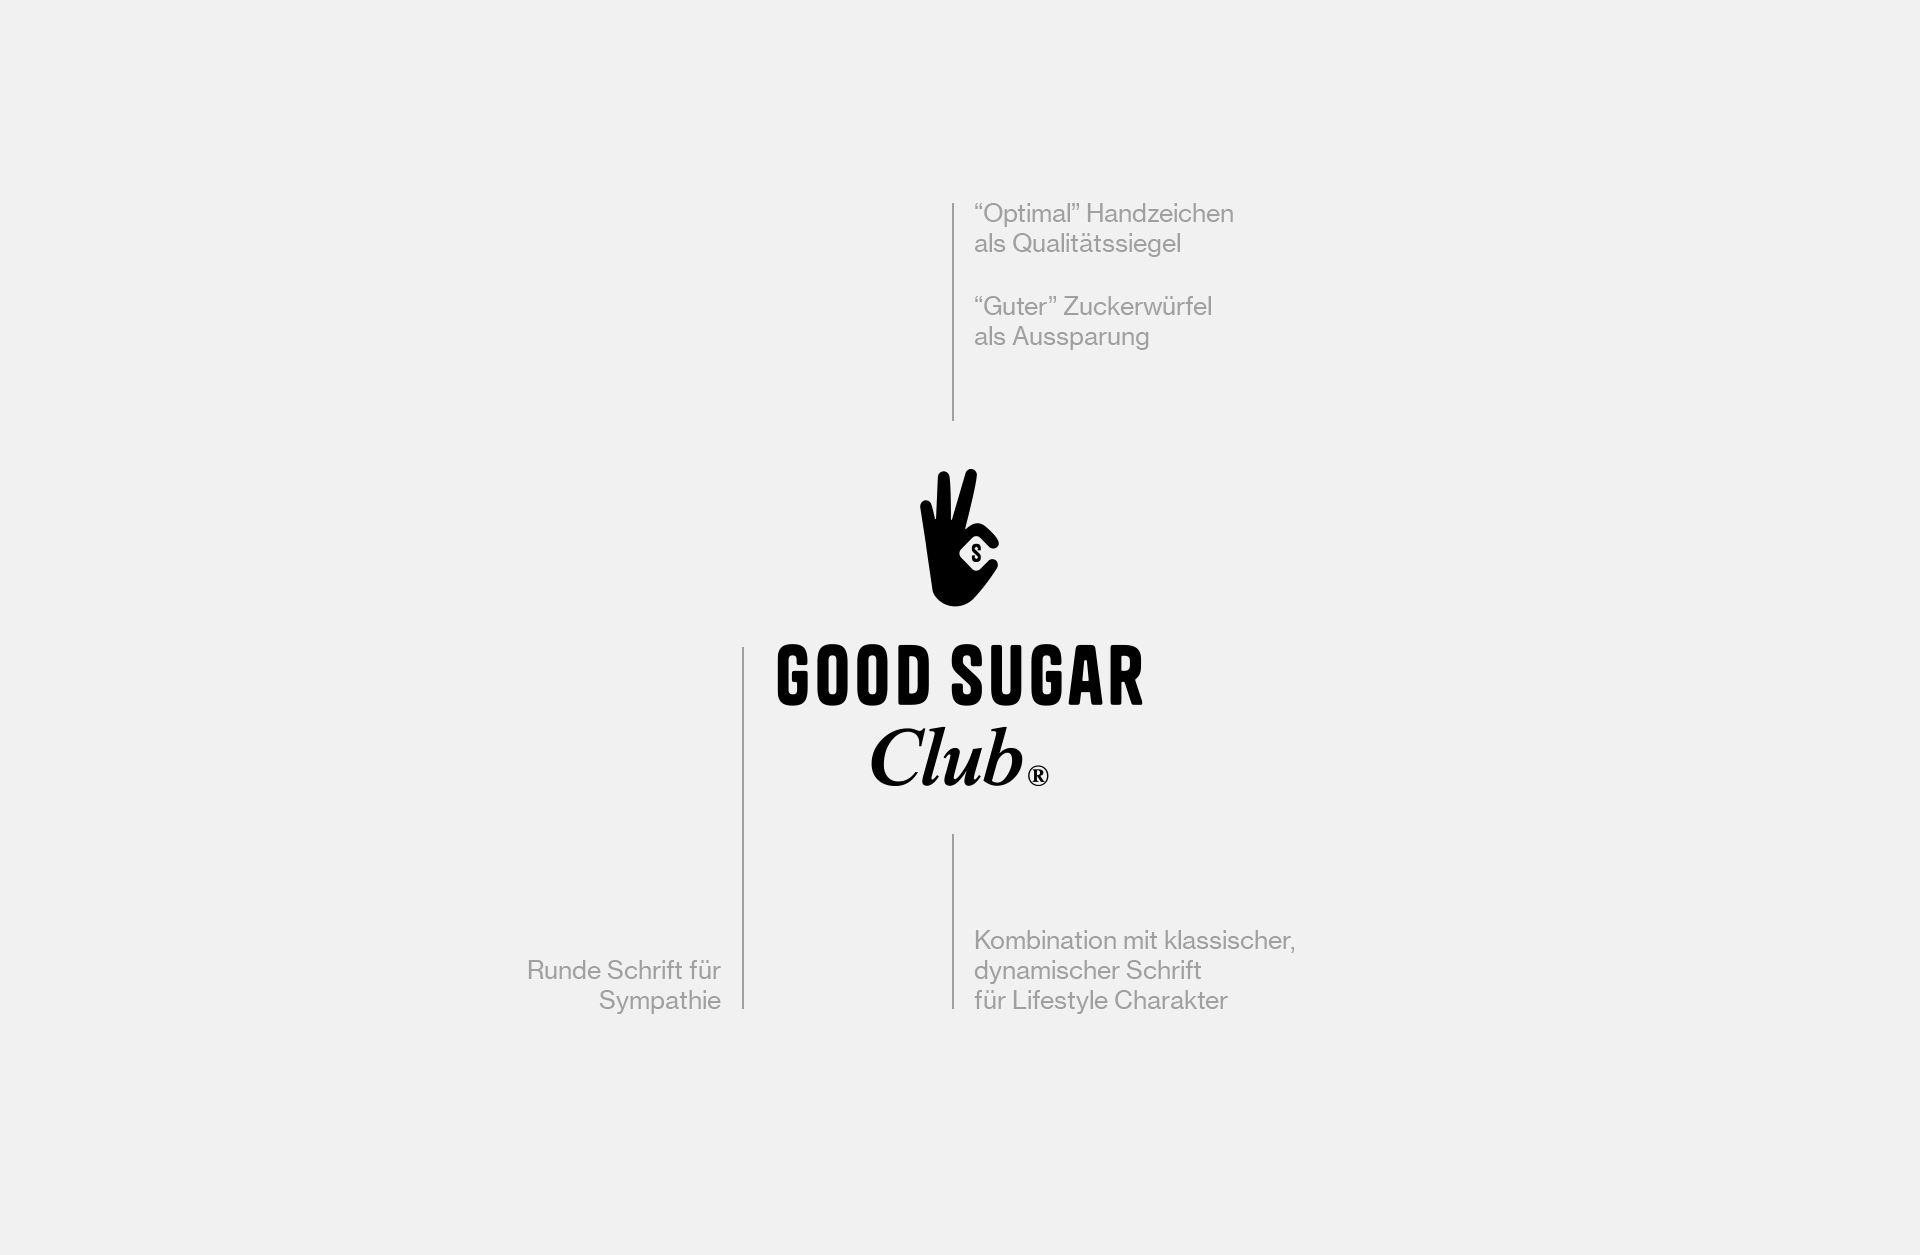 About-Emotions_Designagentur-Recklinghausen_Good-Sugar-Club_Case_Logo-Breakdown.jpg